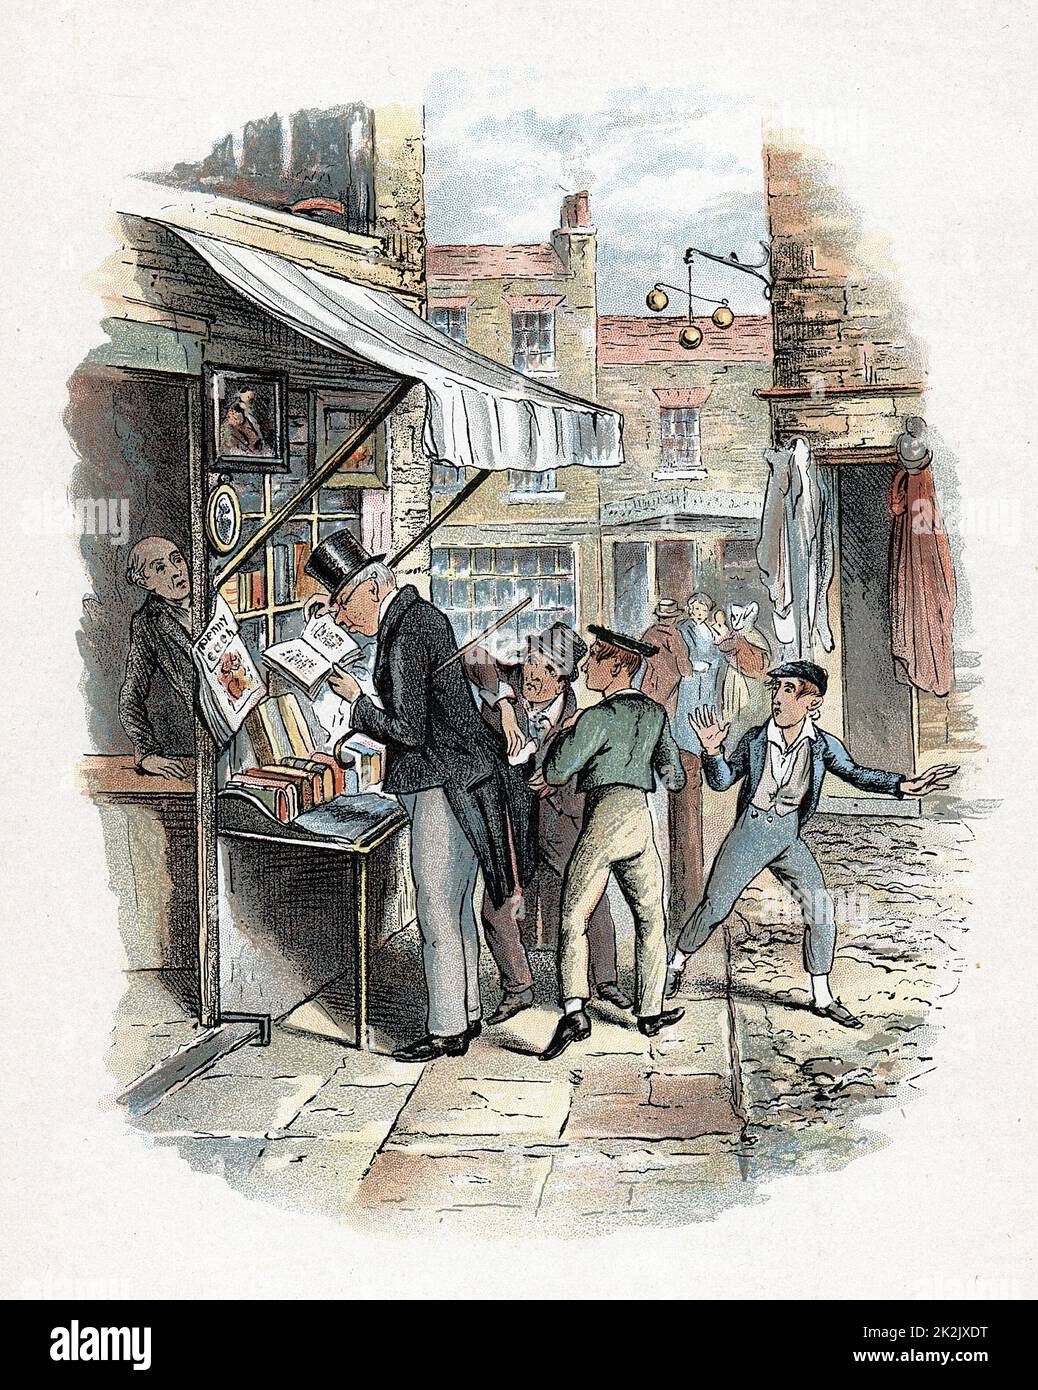 Le Dodger Arlict piquant une poche à l'étonnement d'Oliver Twist. Illustration de George Cruikshank (1792-1878) pour Charles Dickens 'Oliver Twist' 1837-1839 Banque D'Images